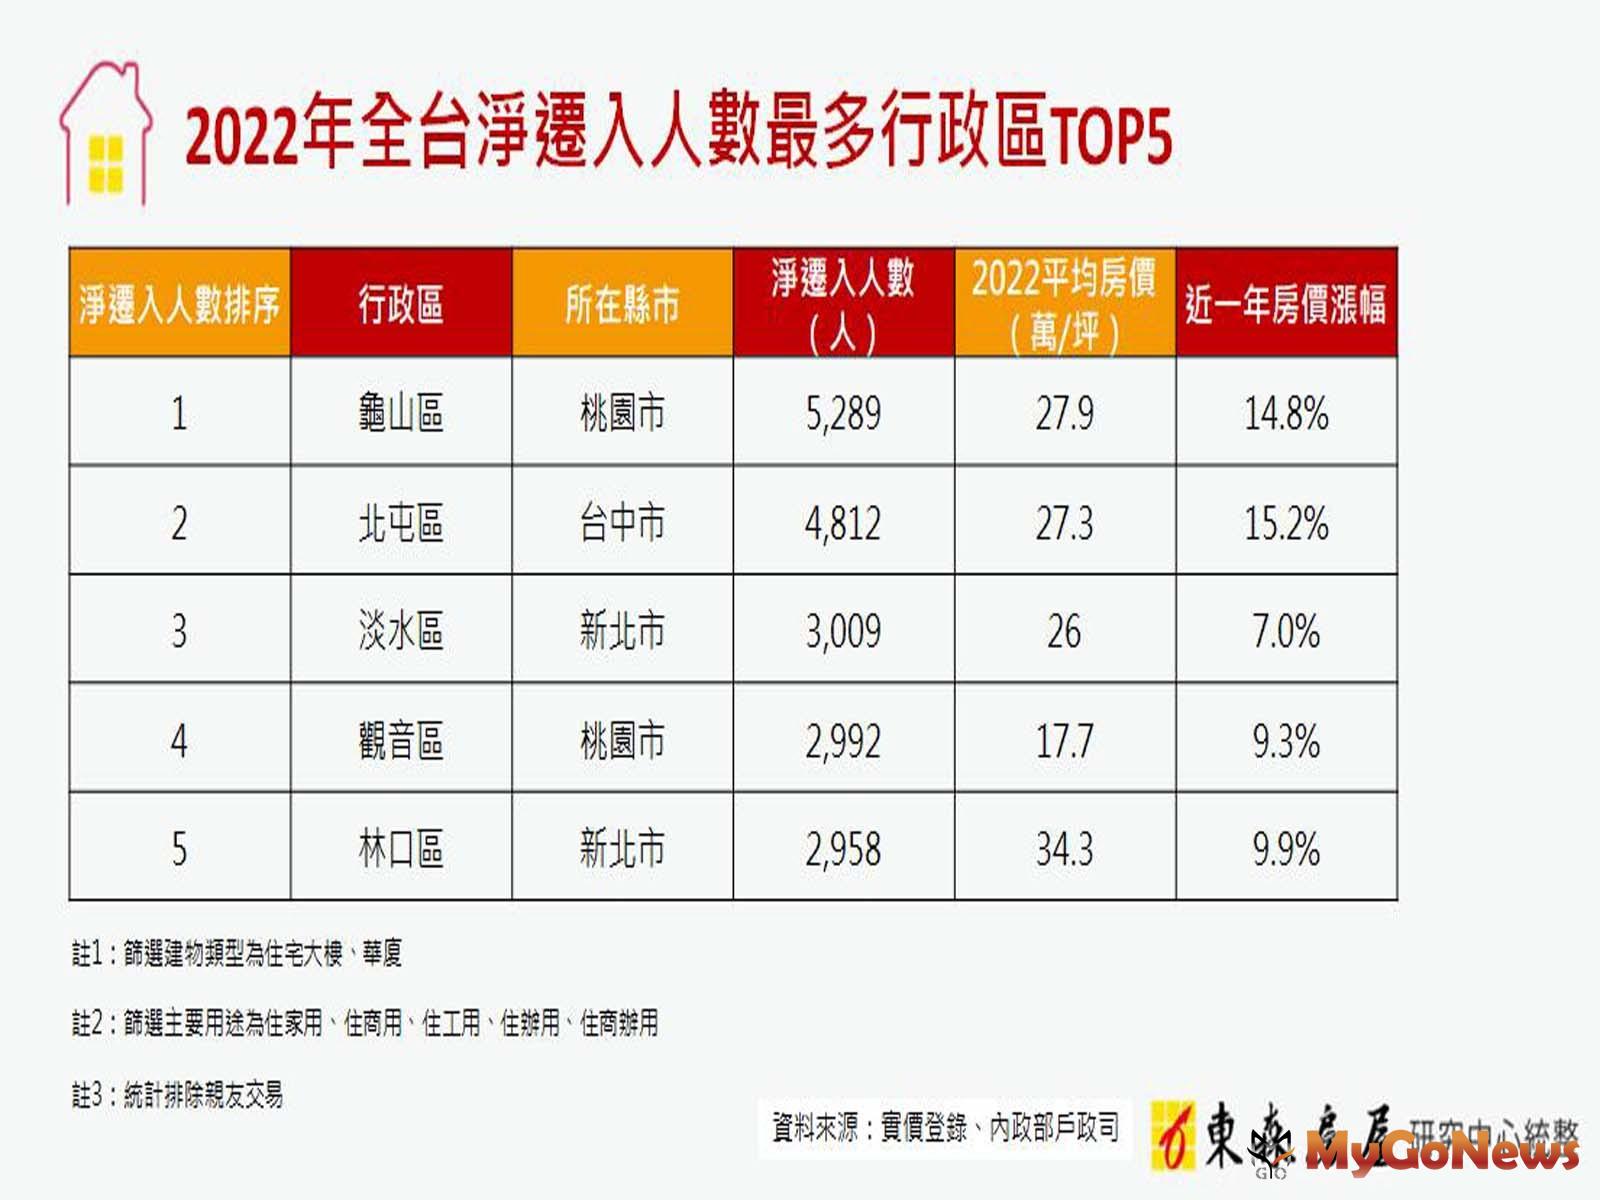 2022年全台淨遷入人數最多行政區TOP5 MyGoNews房地產新聞 市場快訊